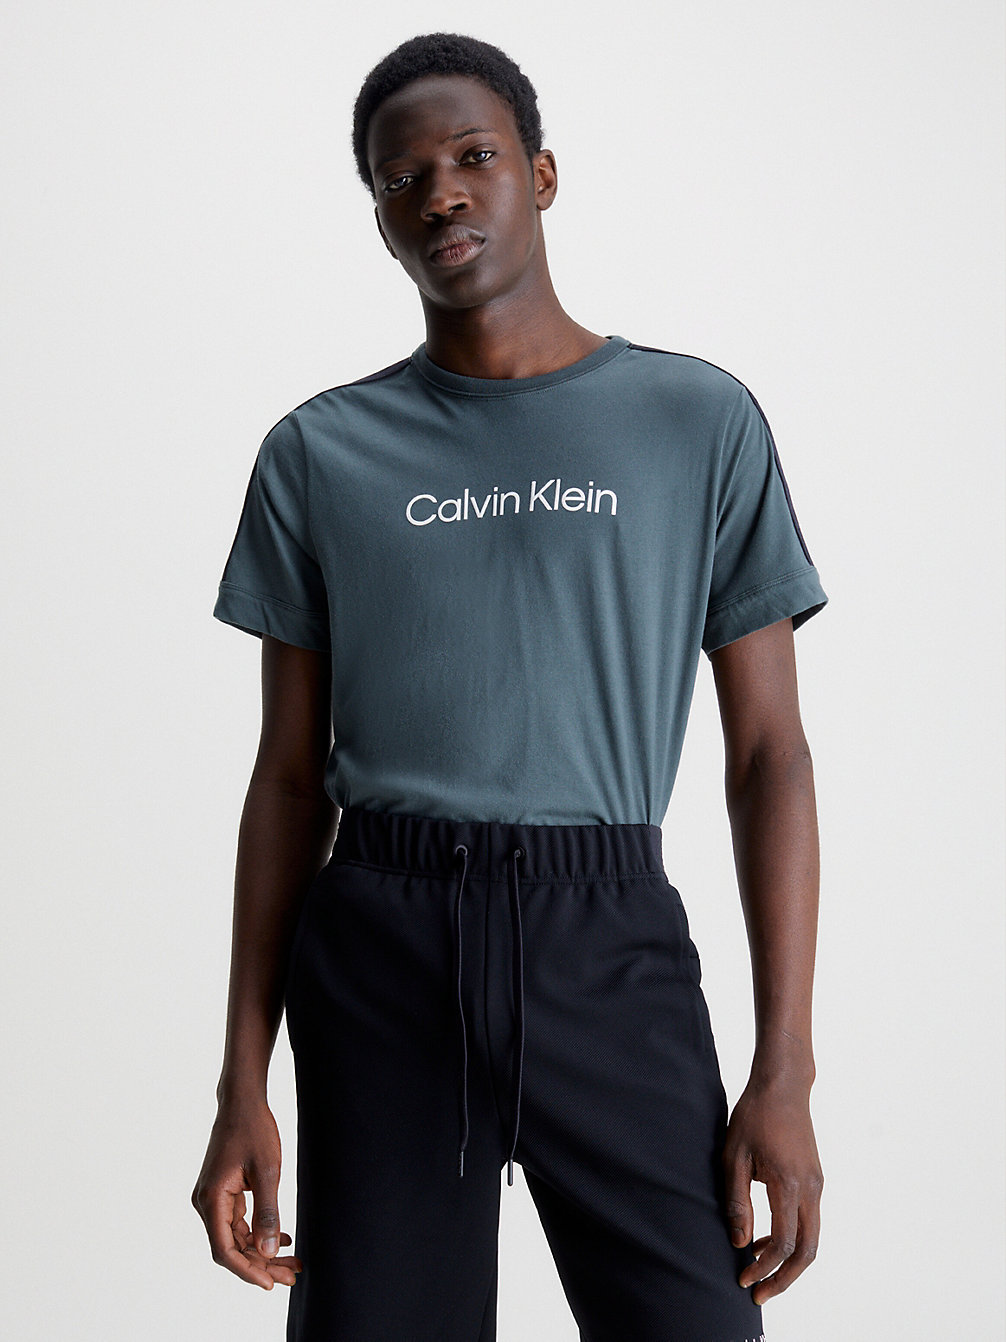 URBAN CHIC > Miękki T-Shirt Sportowy > undefined Mężczyźni - Calvin Klein